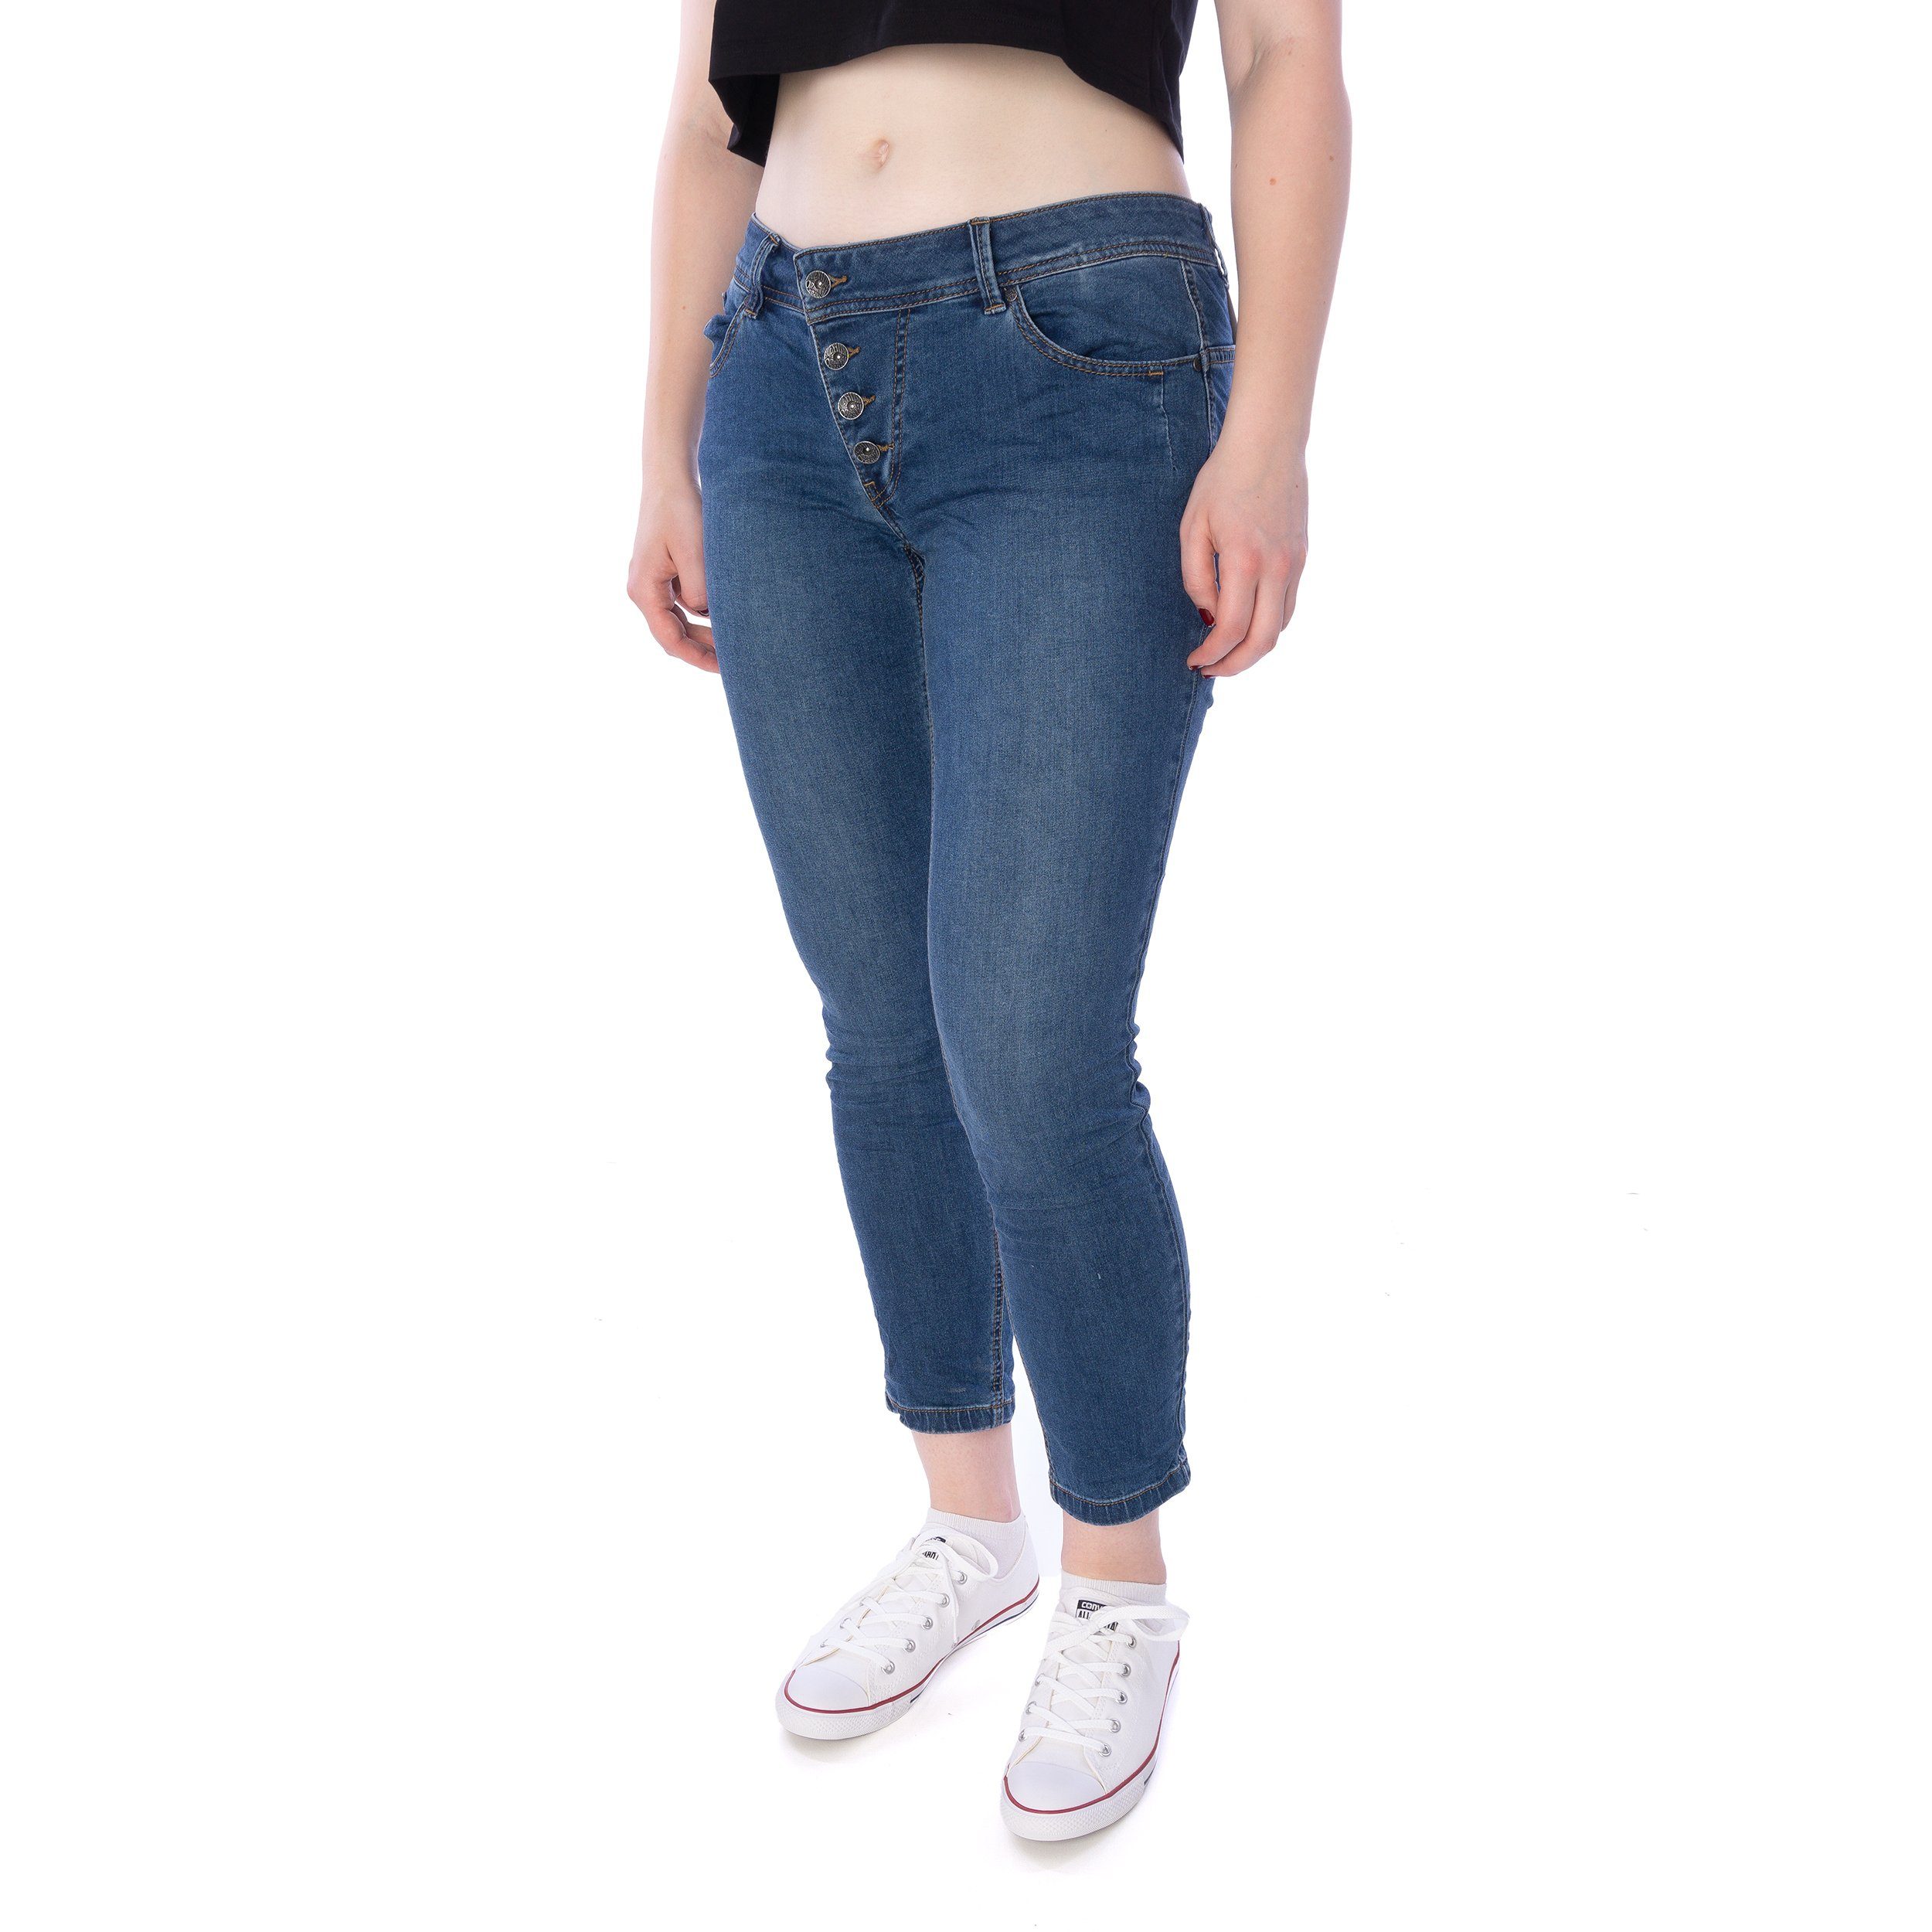 Buena Vista Slim-fit-Jeans Buena Vista Malibu 7/8 stretch denim Hose Damen Jeans blau | Stretchjeans